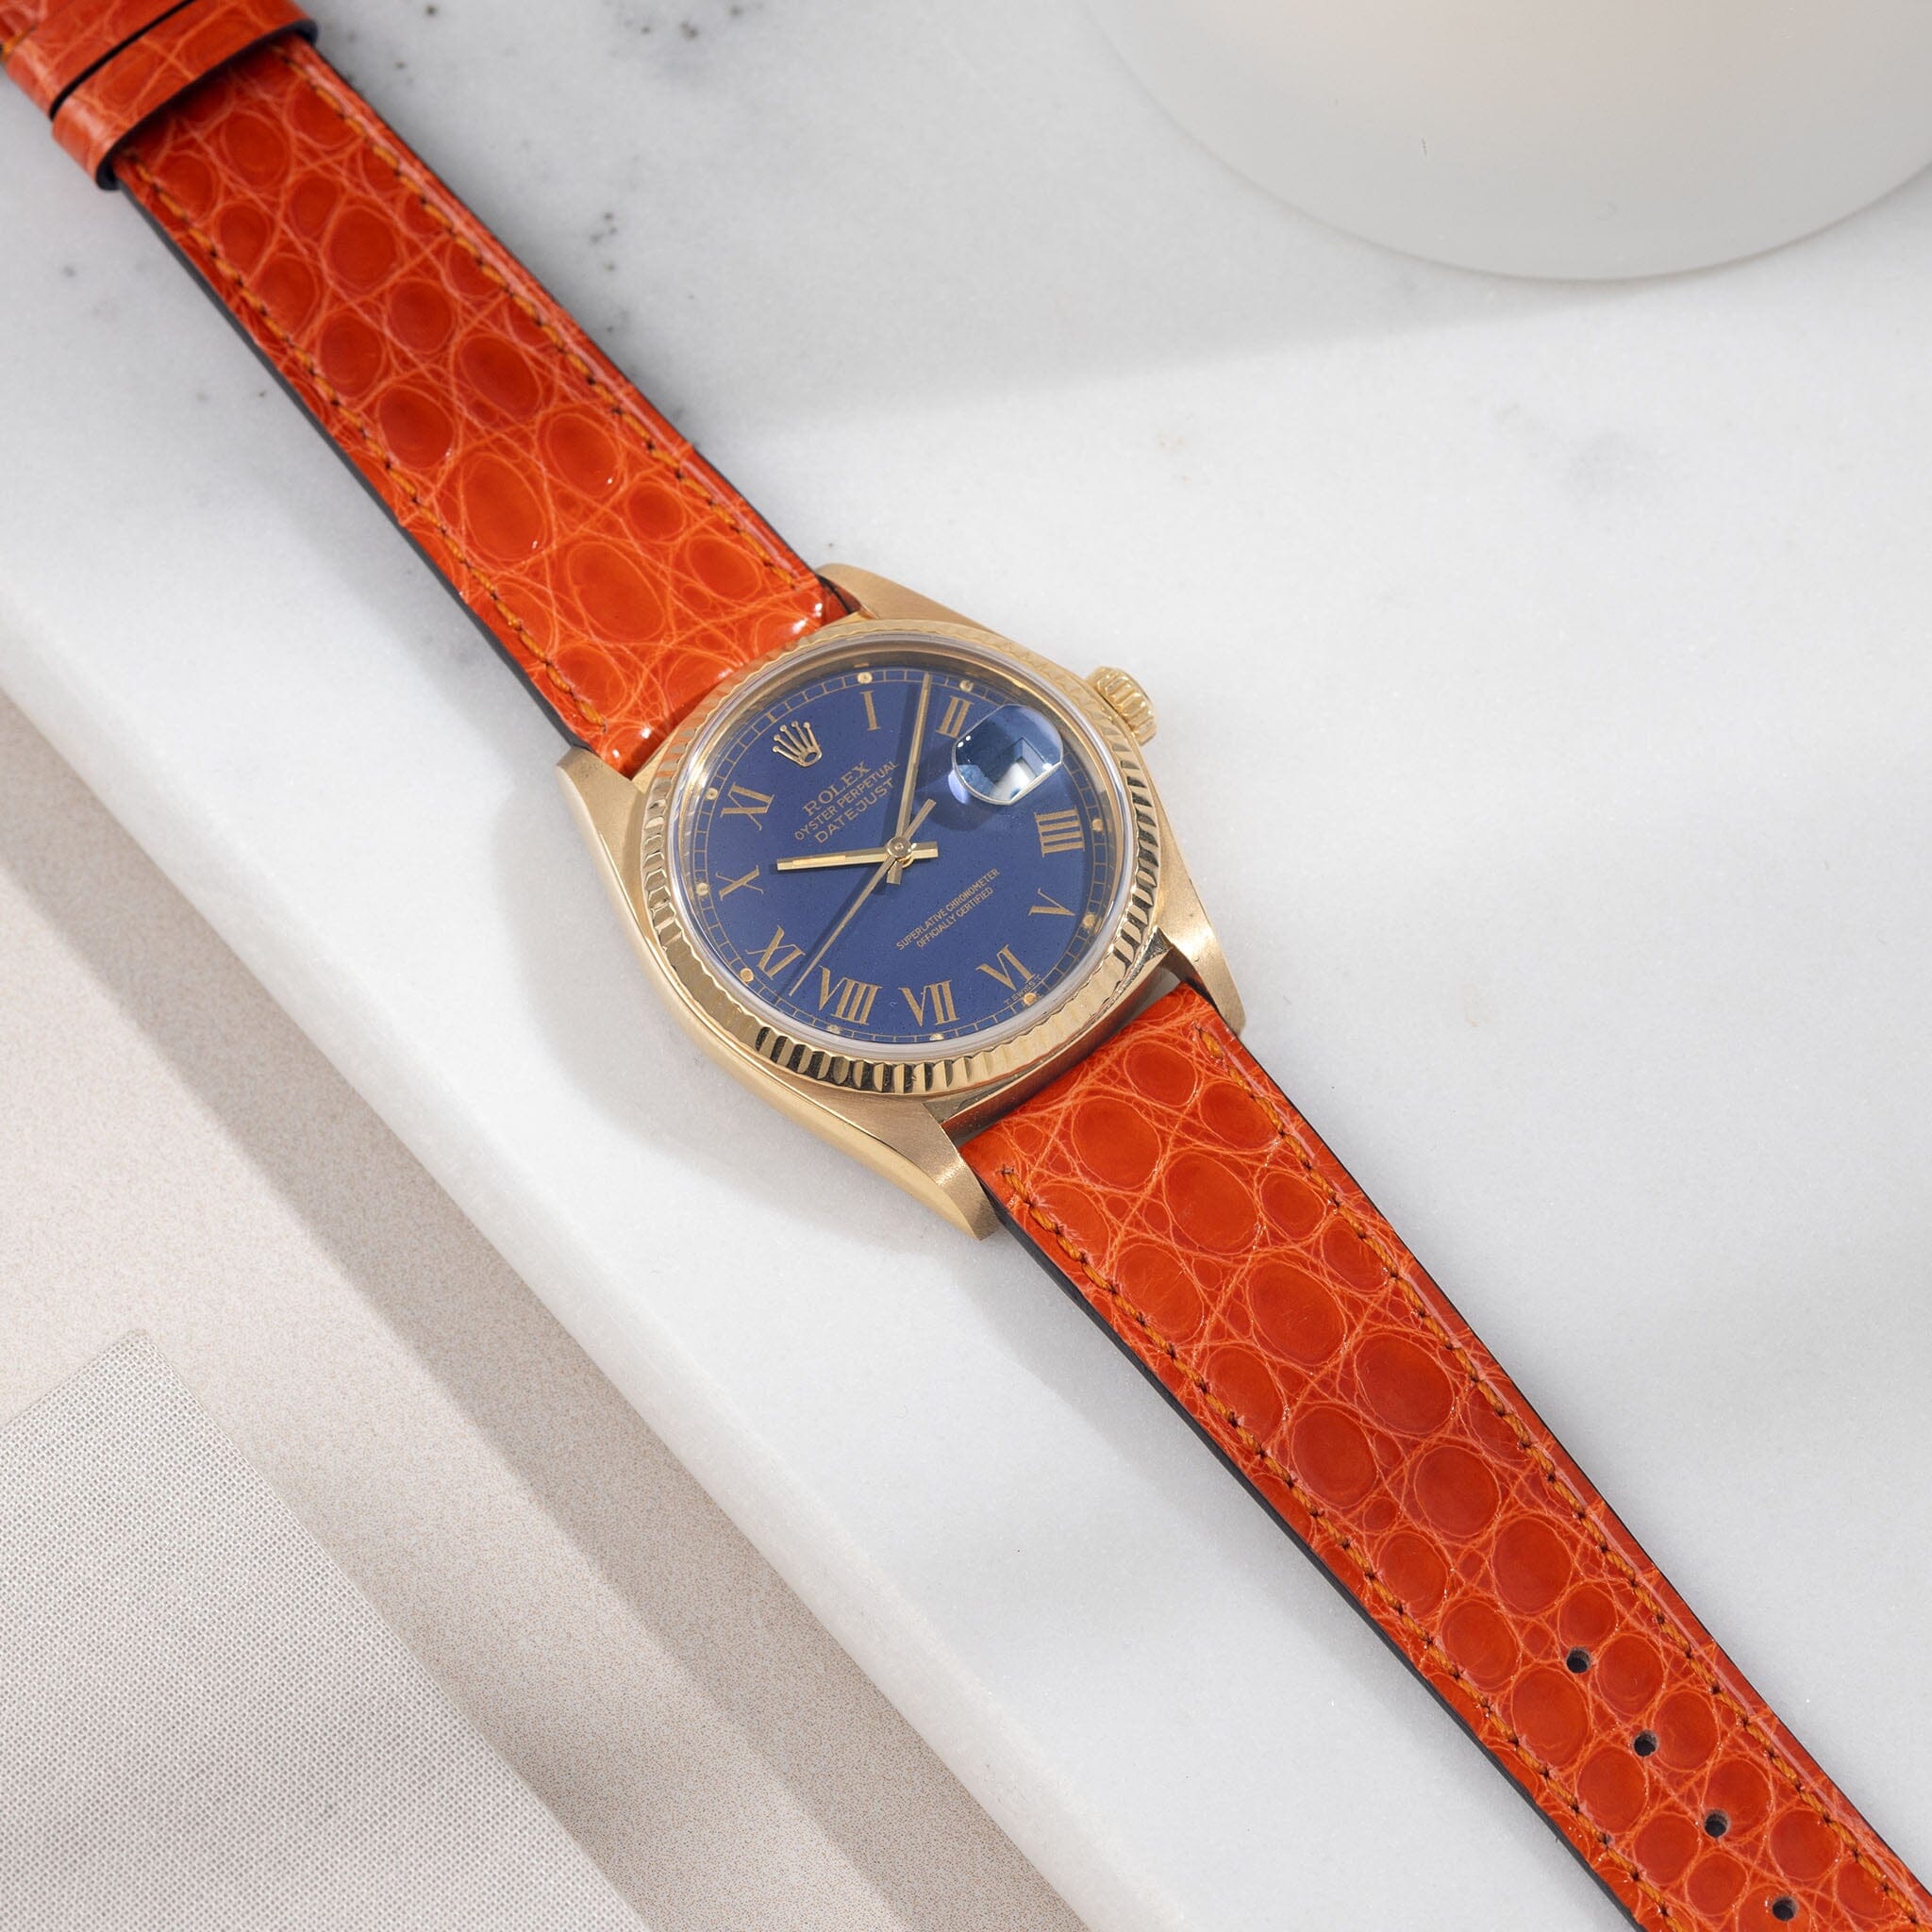 Rolex Datejust 16018 Buckley with orange Alligator Leather Watch Strap